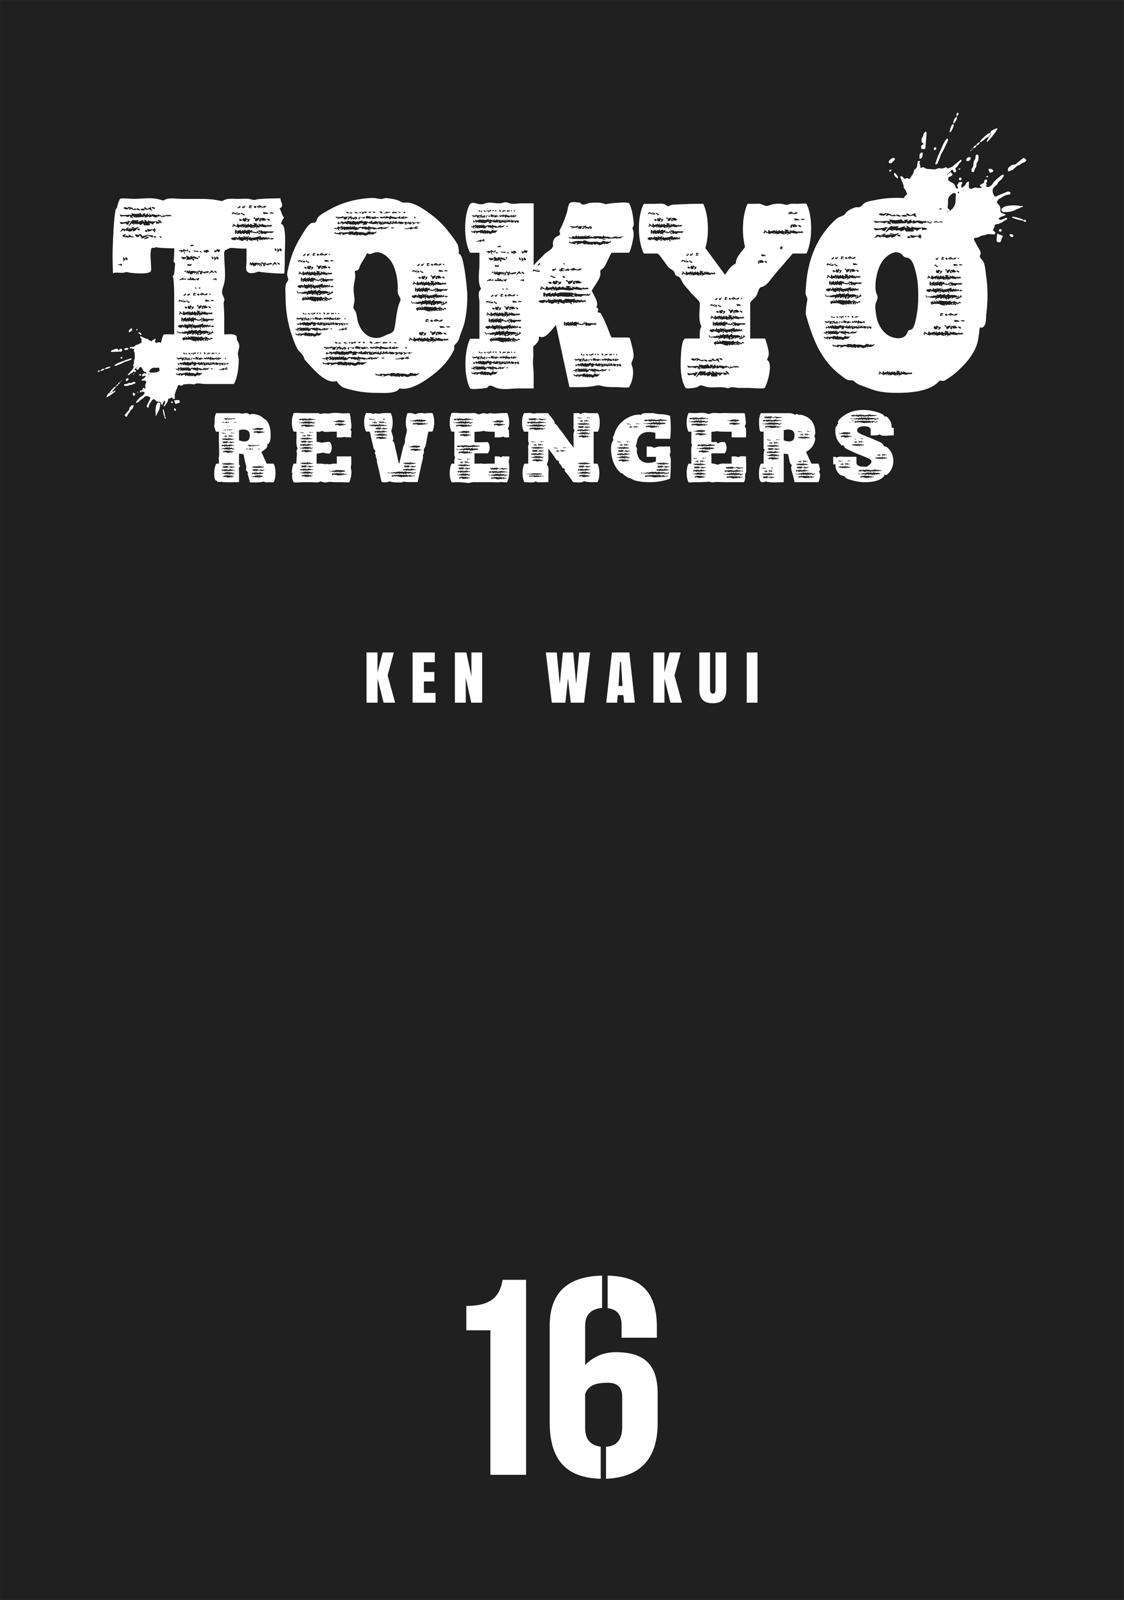 Tokyo卍Revengers Chapter 135